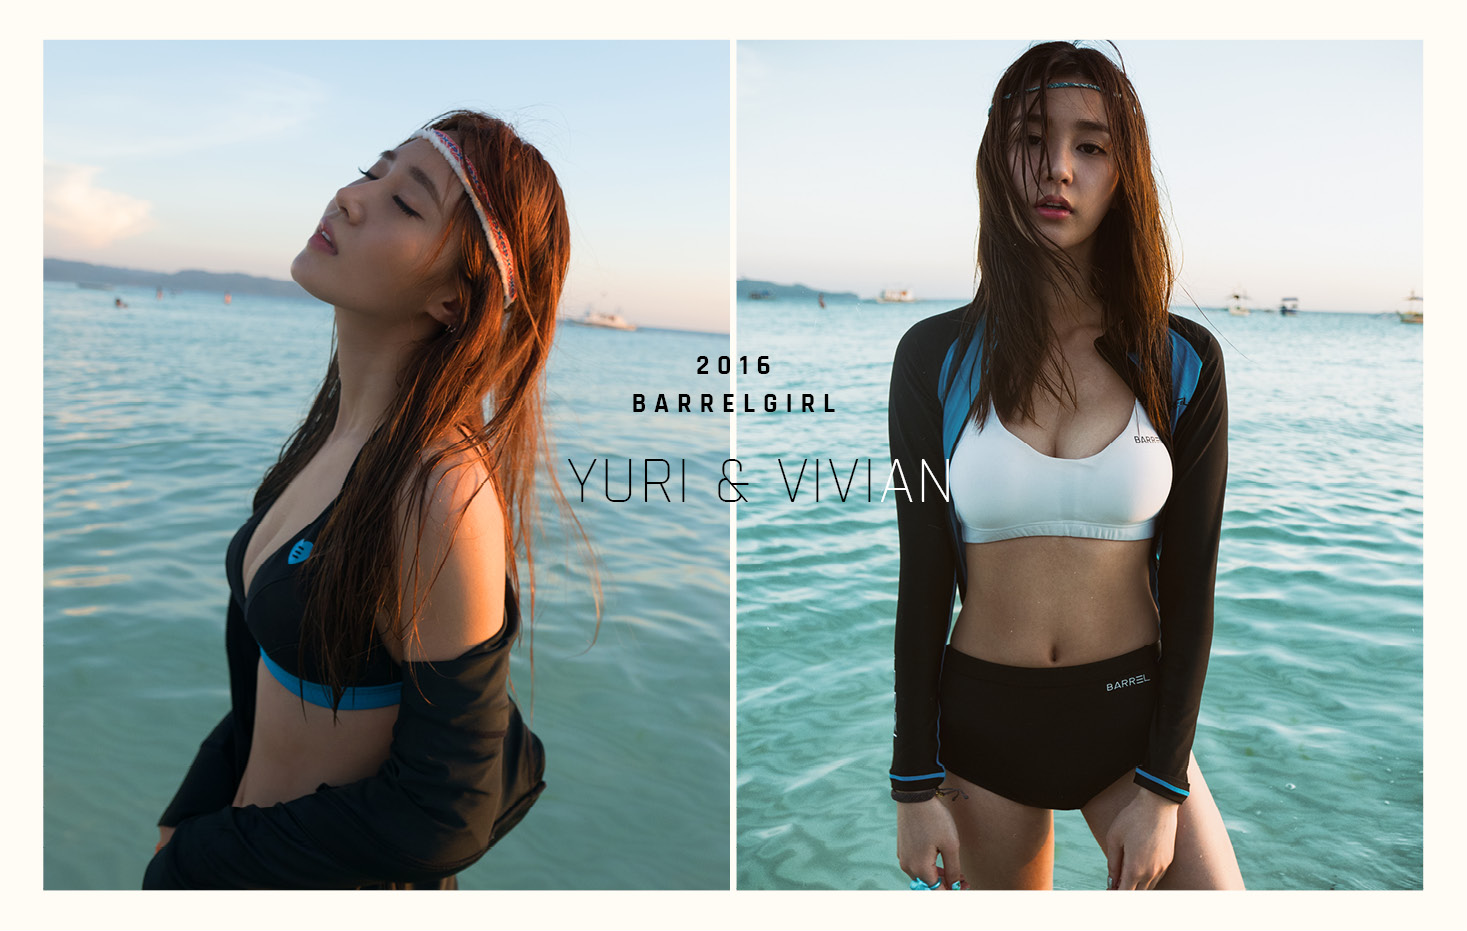 [OTHER][15-04-2016]Yuri trở thành người mẫu mới cho thương hiệu đồ bơi "BARREL" - Page 2 Yurivivian_boracay24